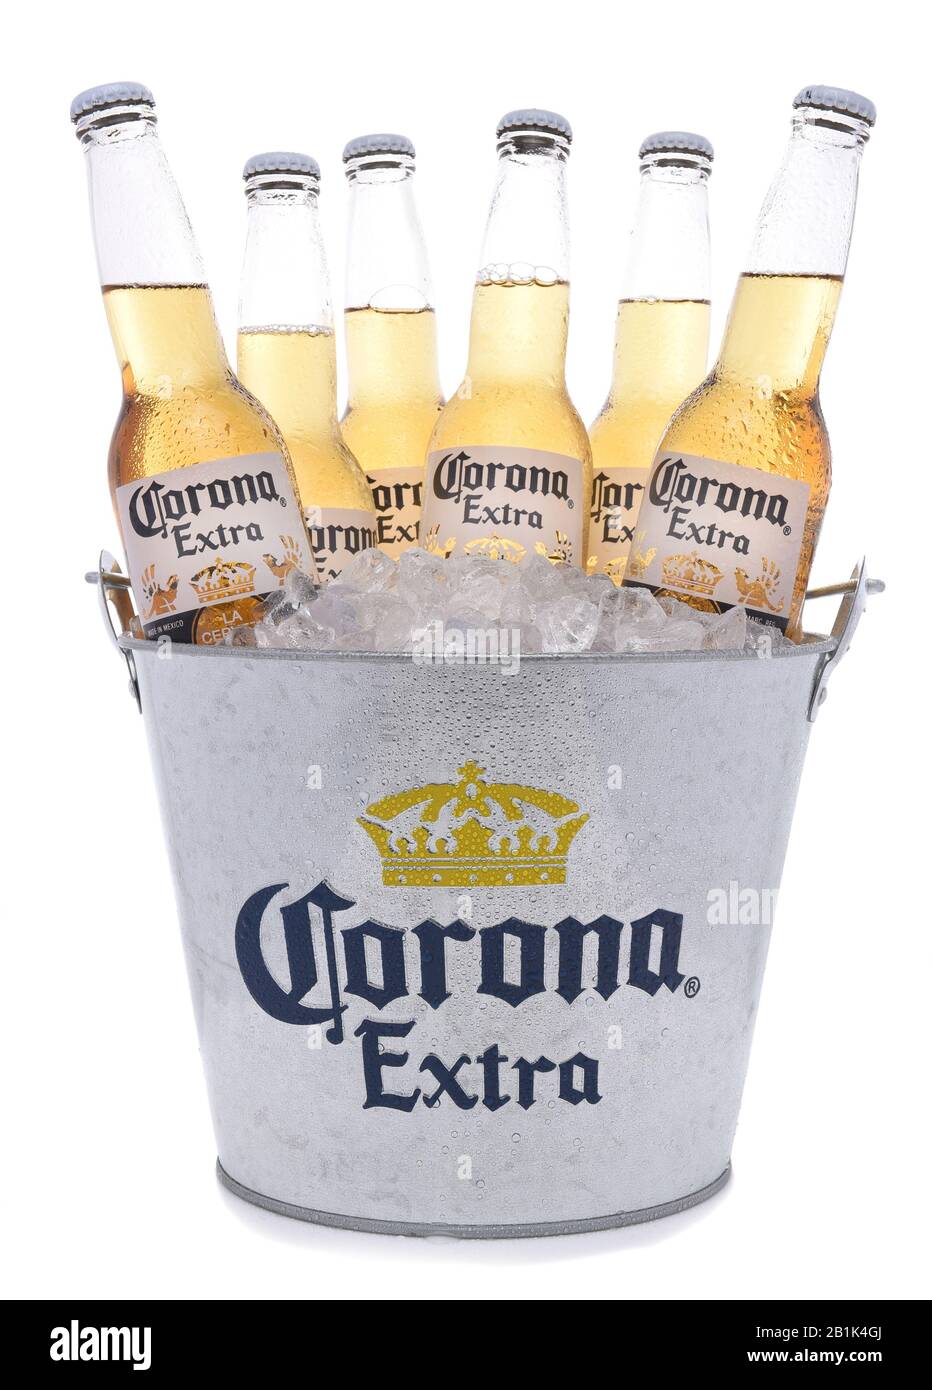 Irvine, KALIFORNIEN - 27. NOVEMBER 2017: Eimer mit Corona Extra Bierflaschen. Corona ist das beliebteste Importbier in den USA. Stockfoto